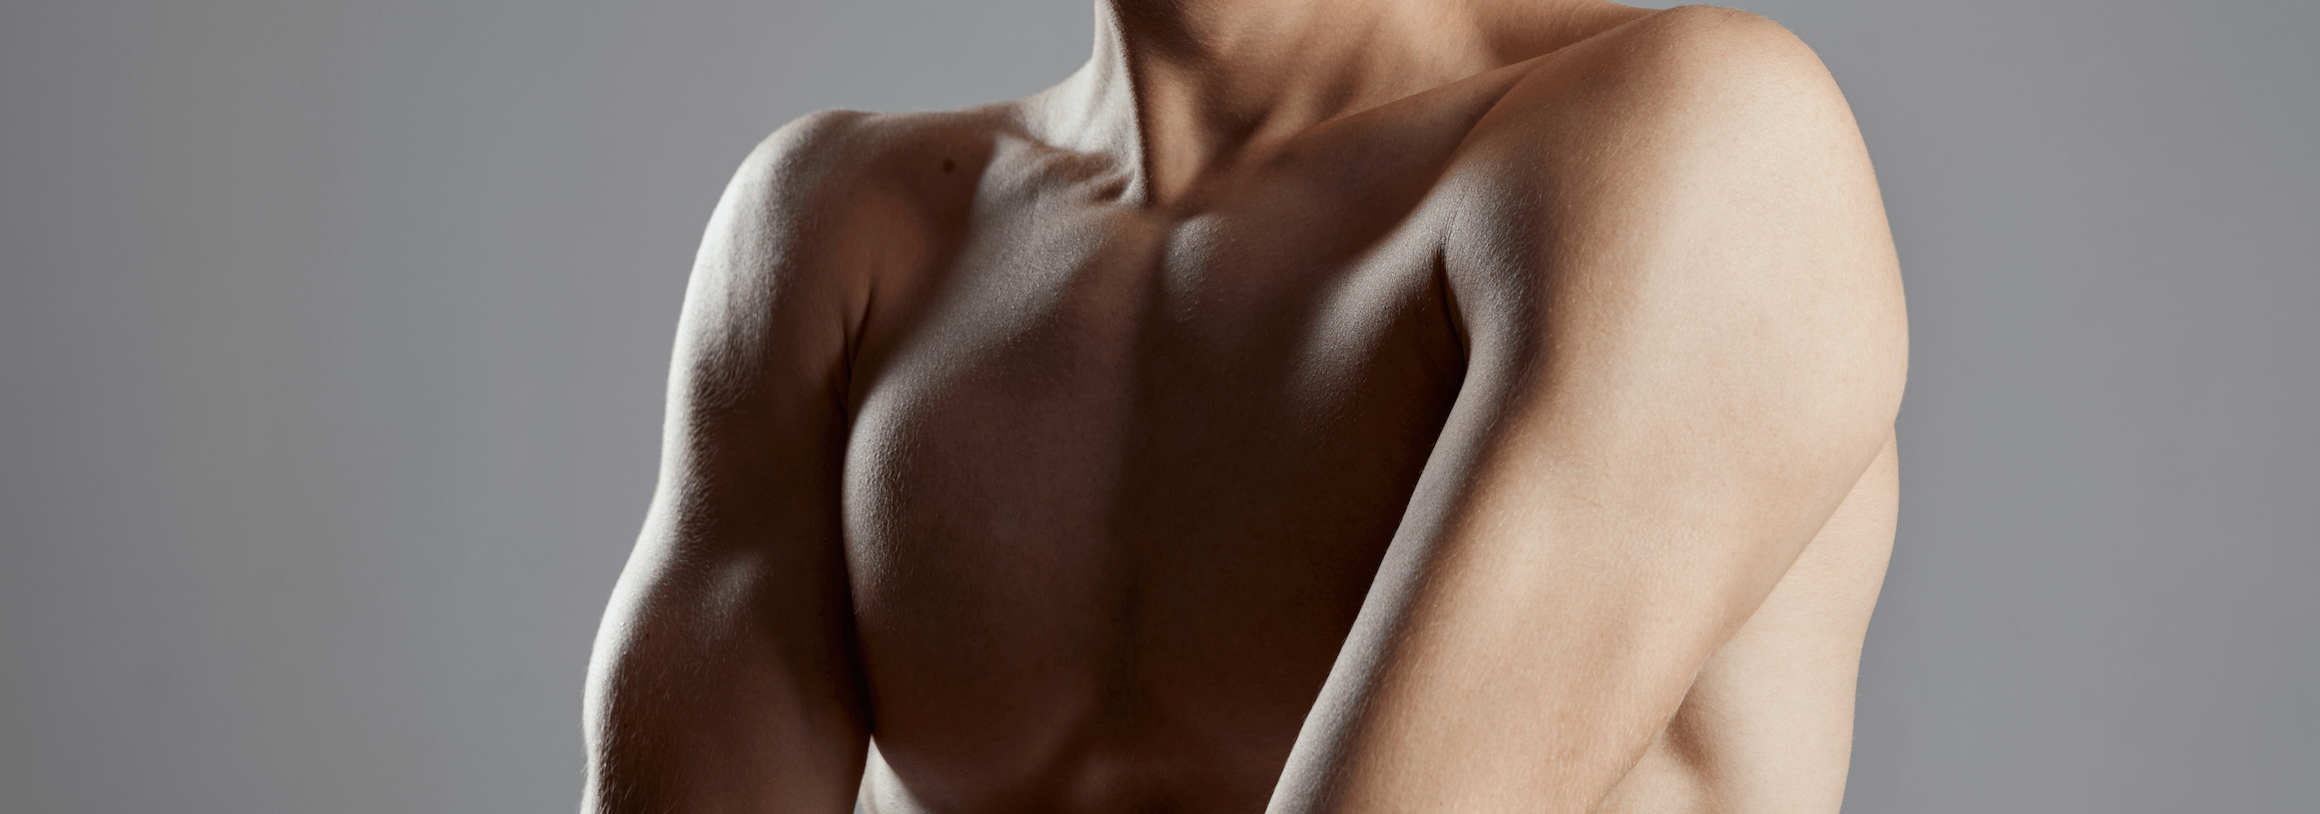 Lipomastia – liposukcja męskiej piersi